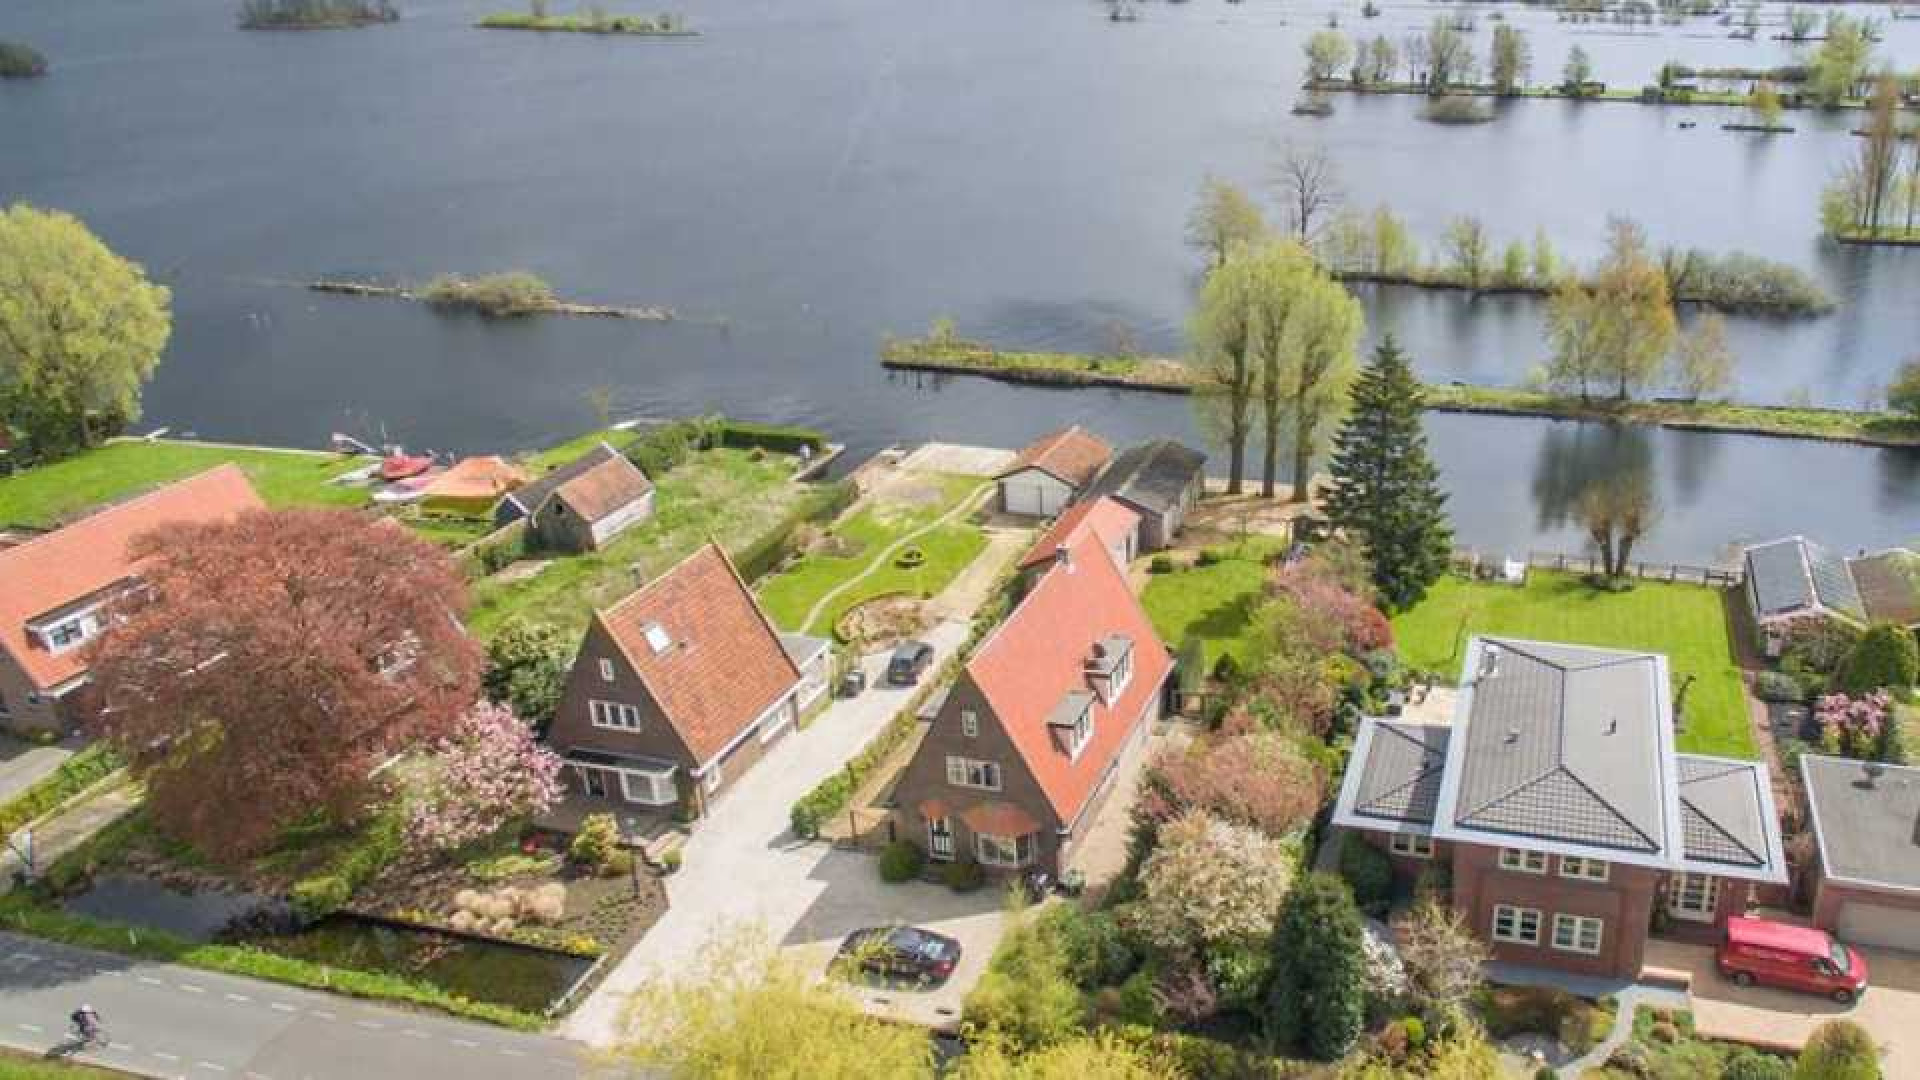 Thomas Berge huurt villa met botenhuis en eiland. Zie foto's 1